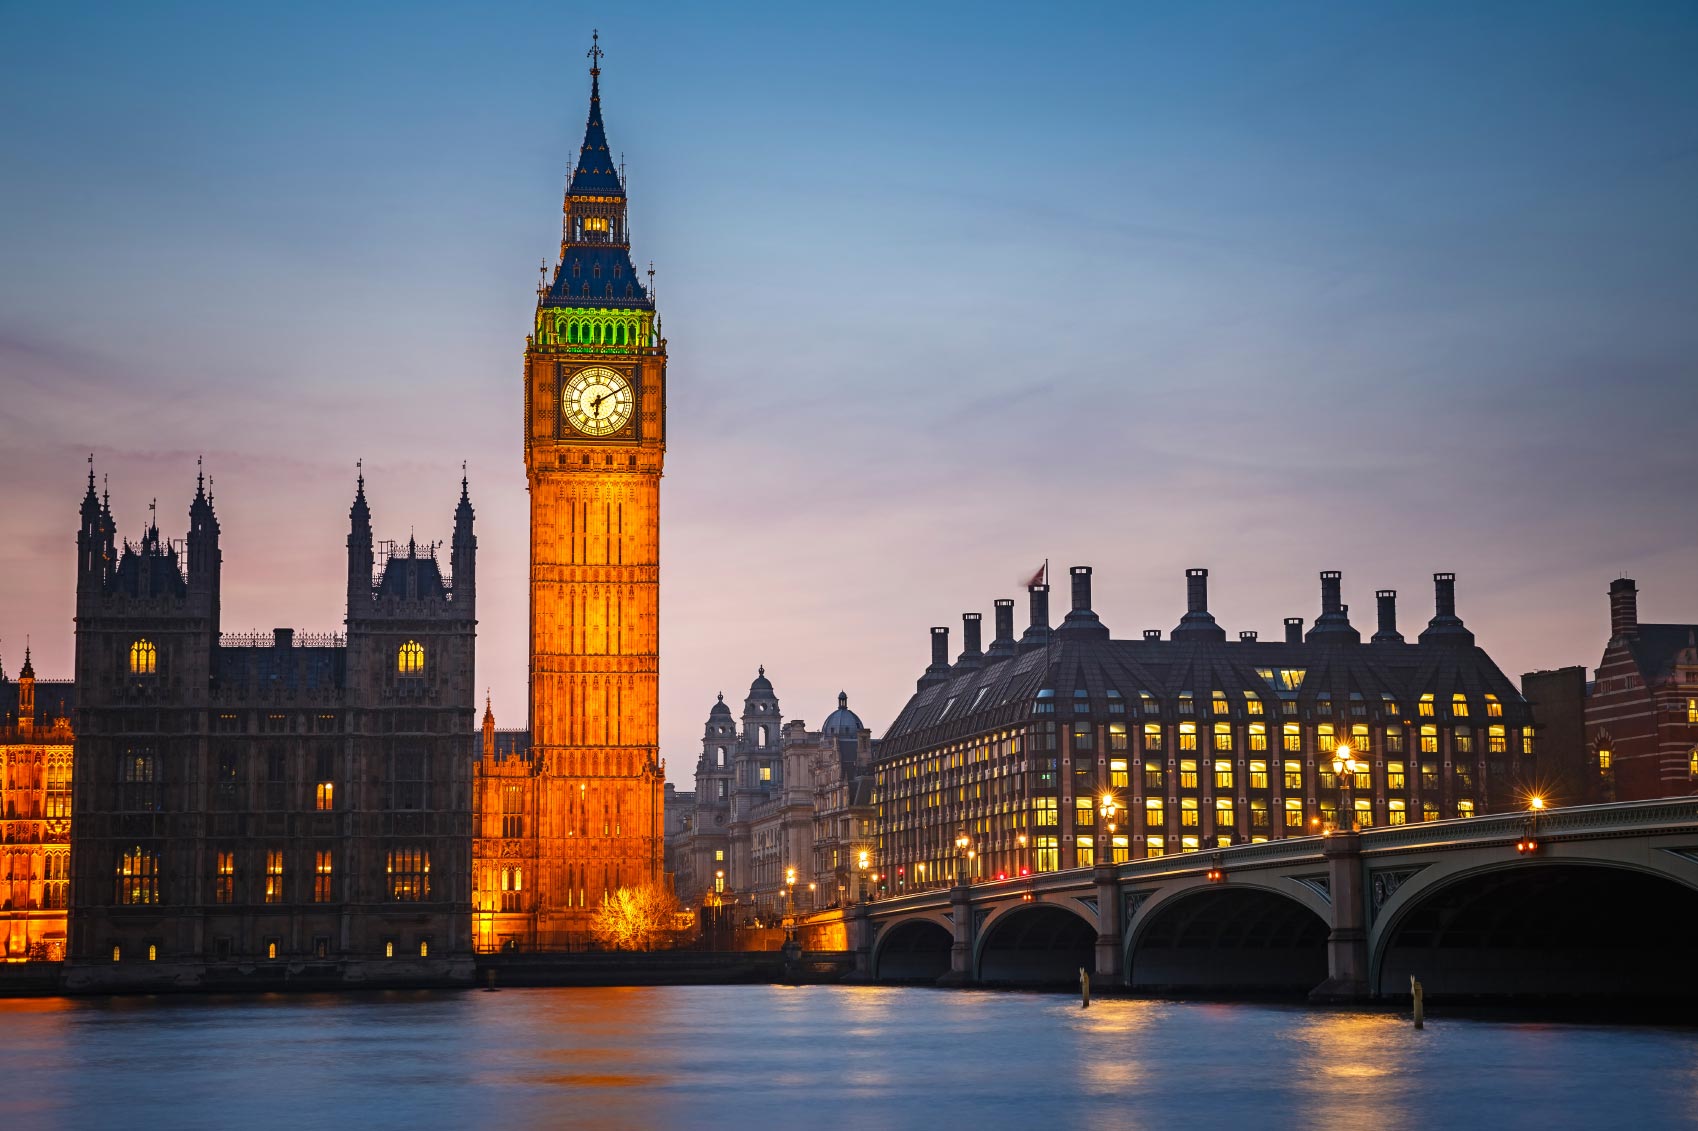  El Big Ben, símbolo clásico de Londres